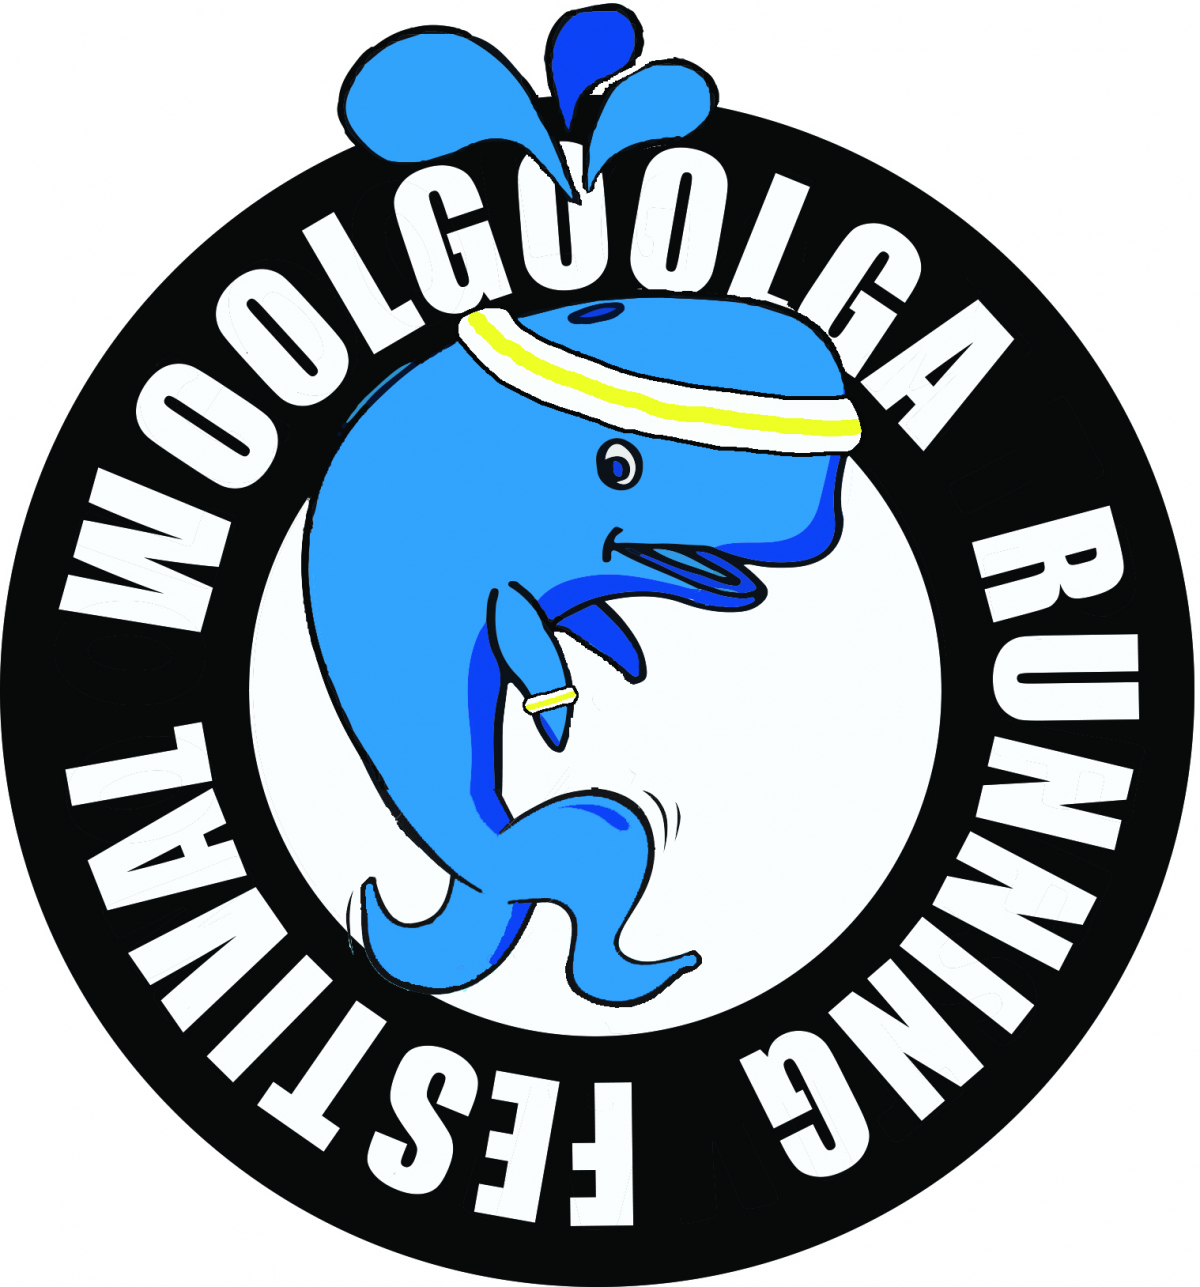 10km Fun Run Woolgoolga Running Festival